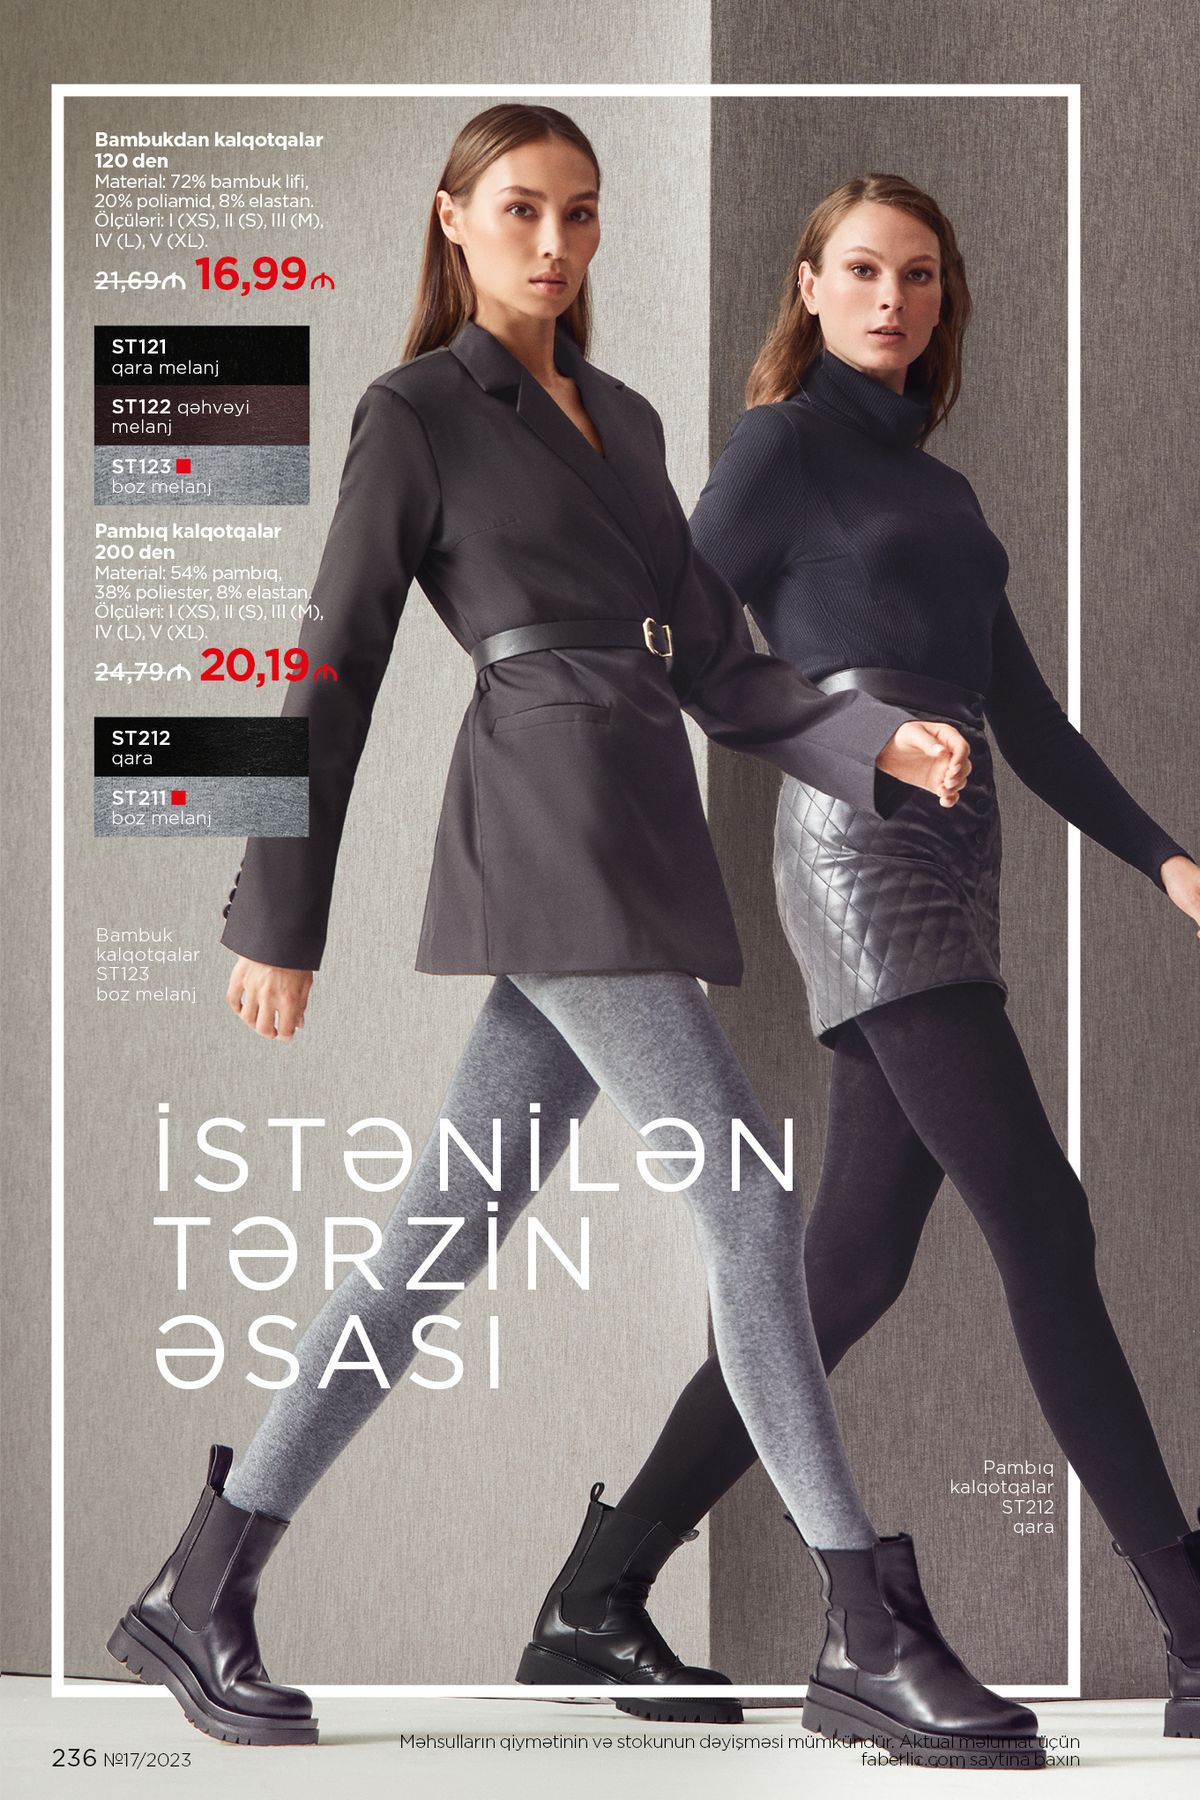 фаберлик 17 2021 каталог Азербайджан страница 236